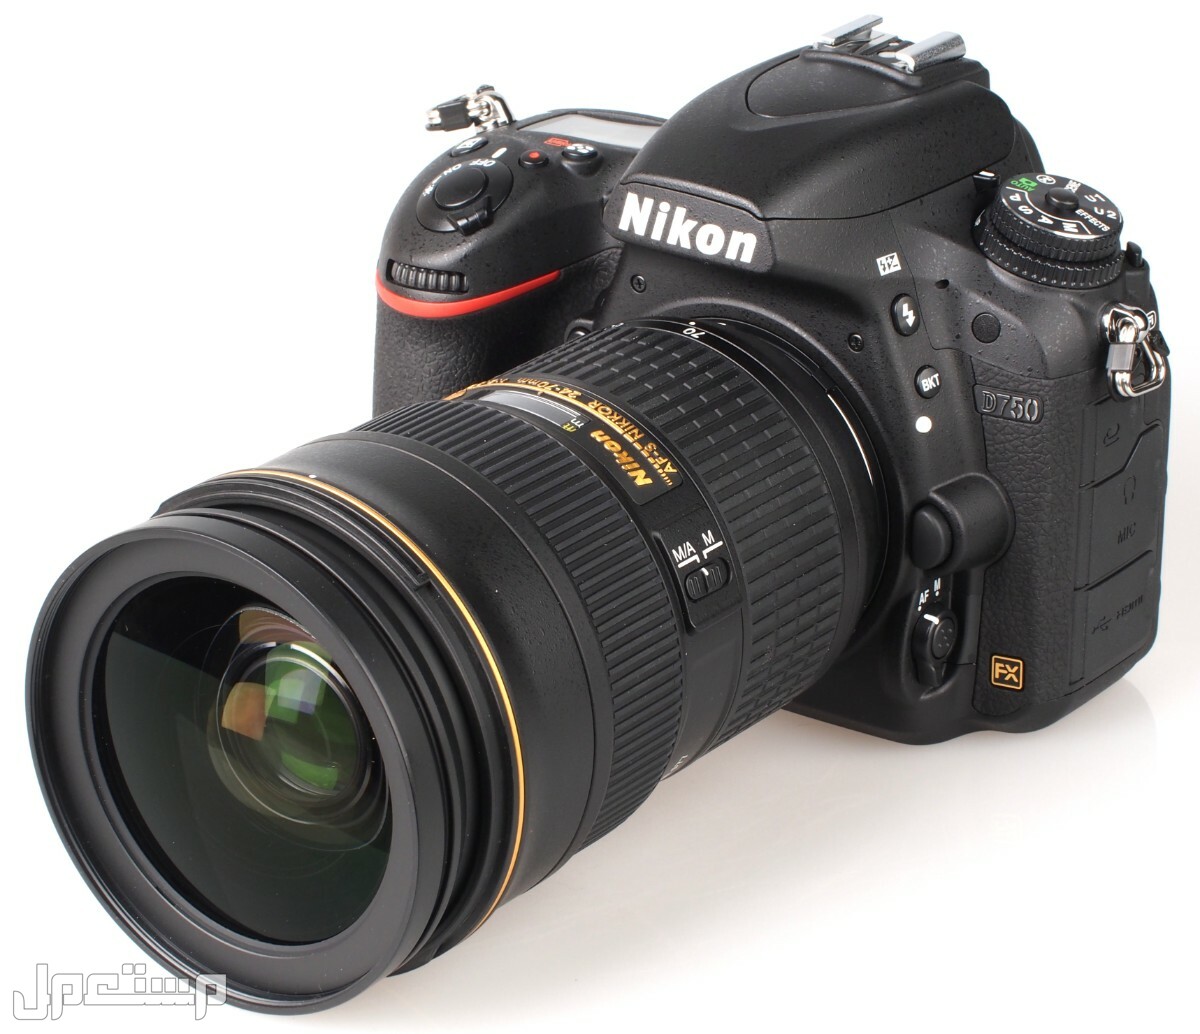 مواصفات ومميزات وأسعار أفضل أنواع كاميرات نيكون للمحترفين في العراق كاميرا Nikon D750